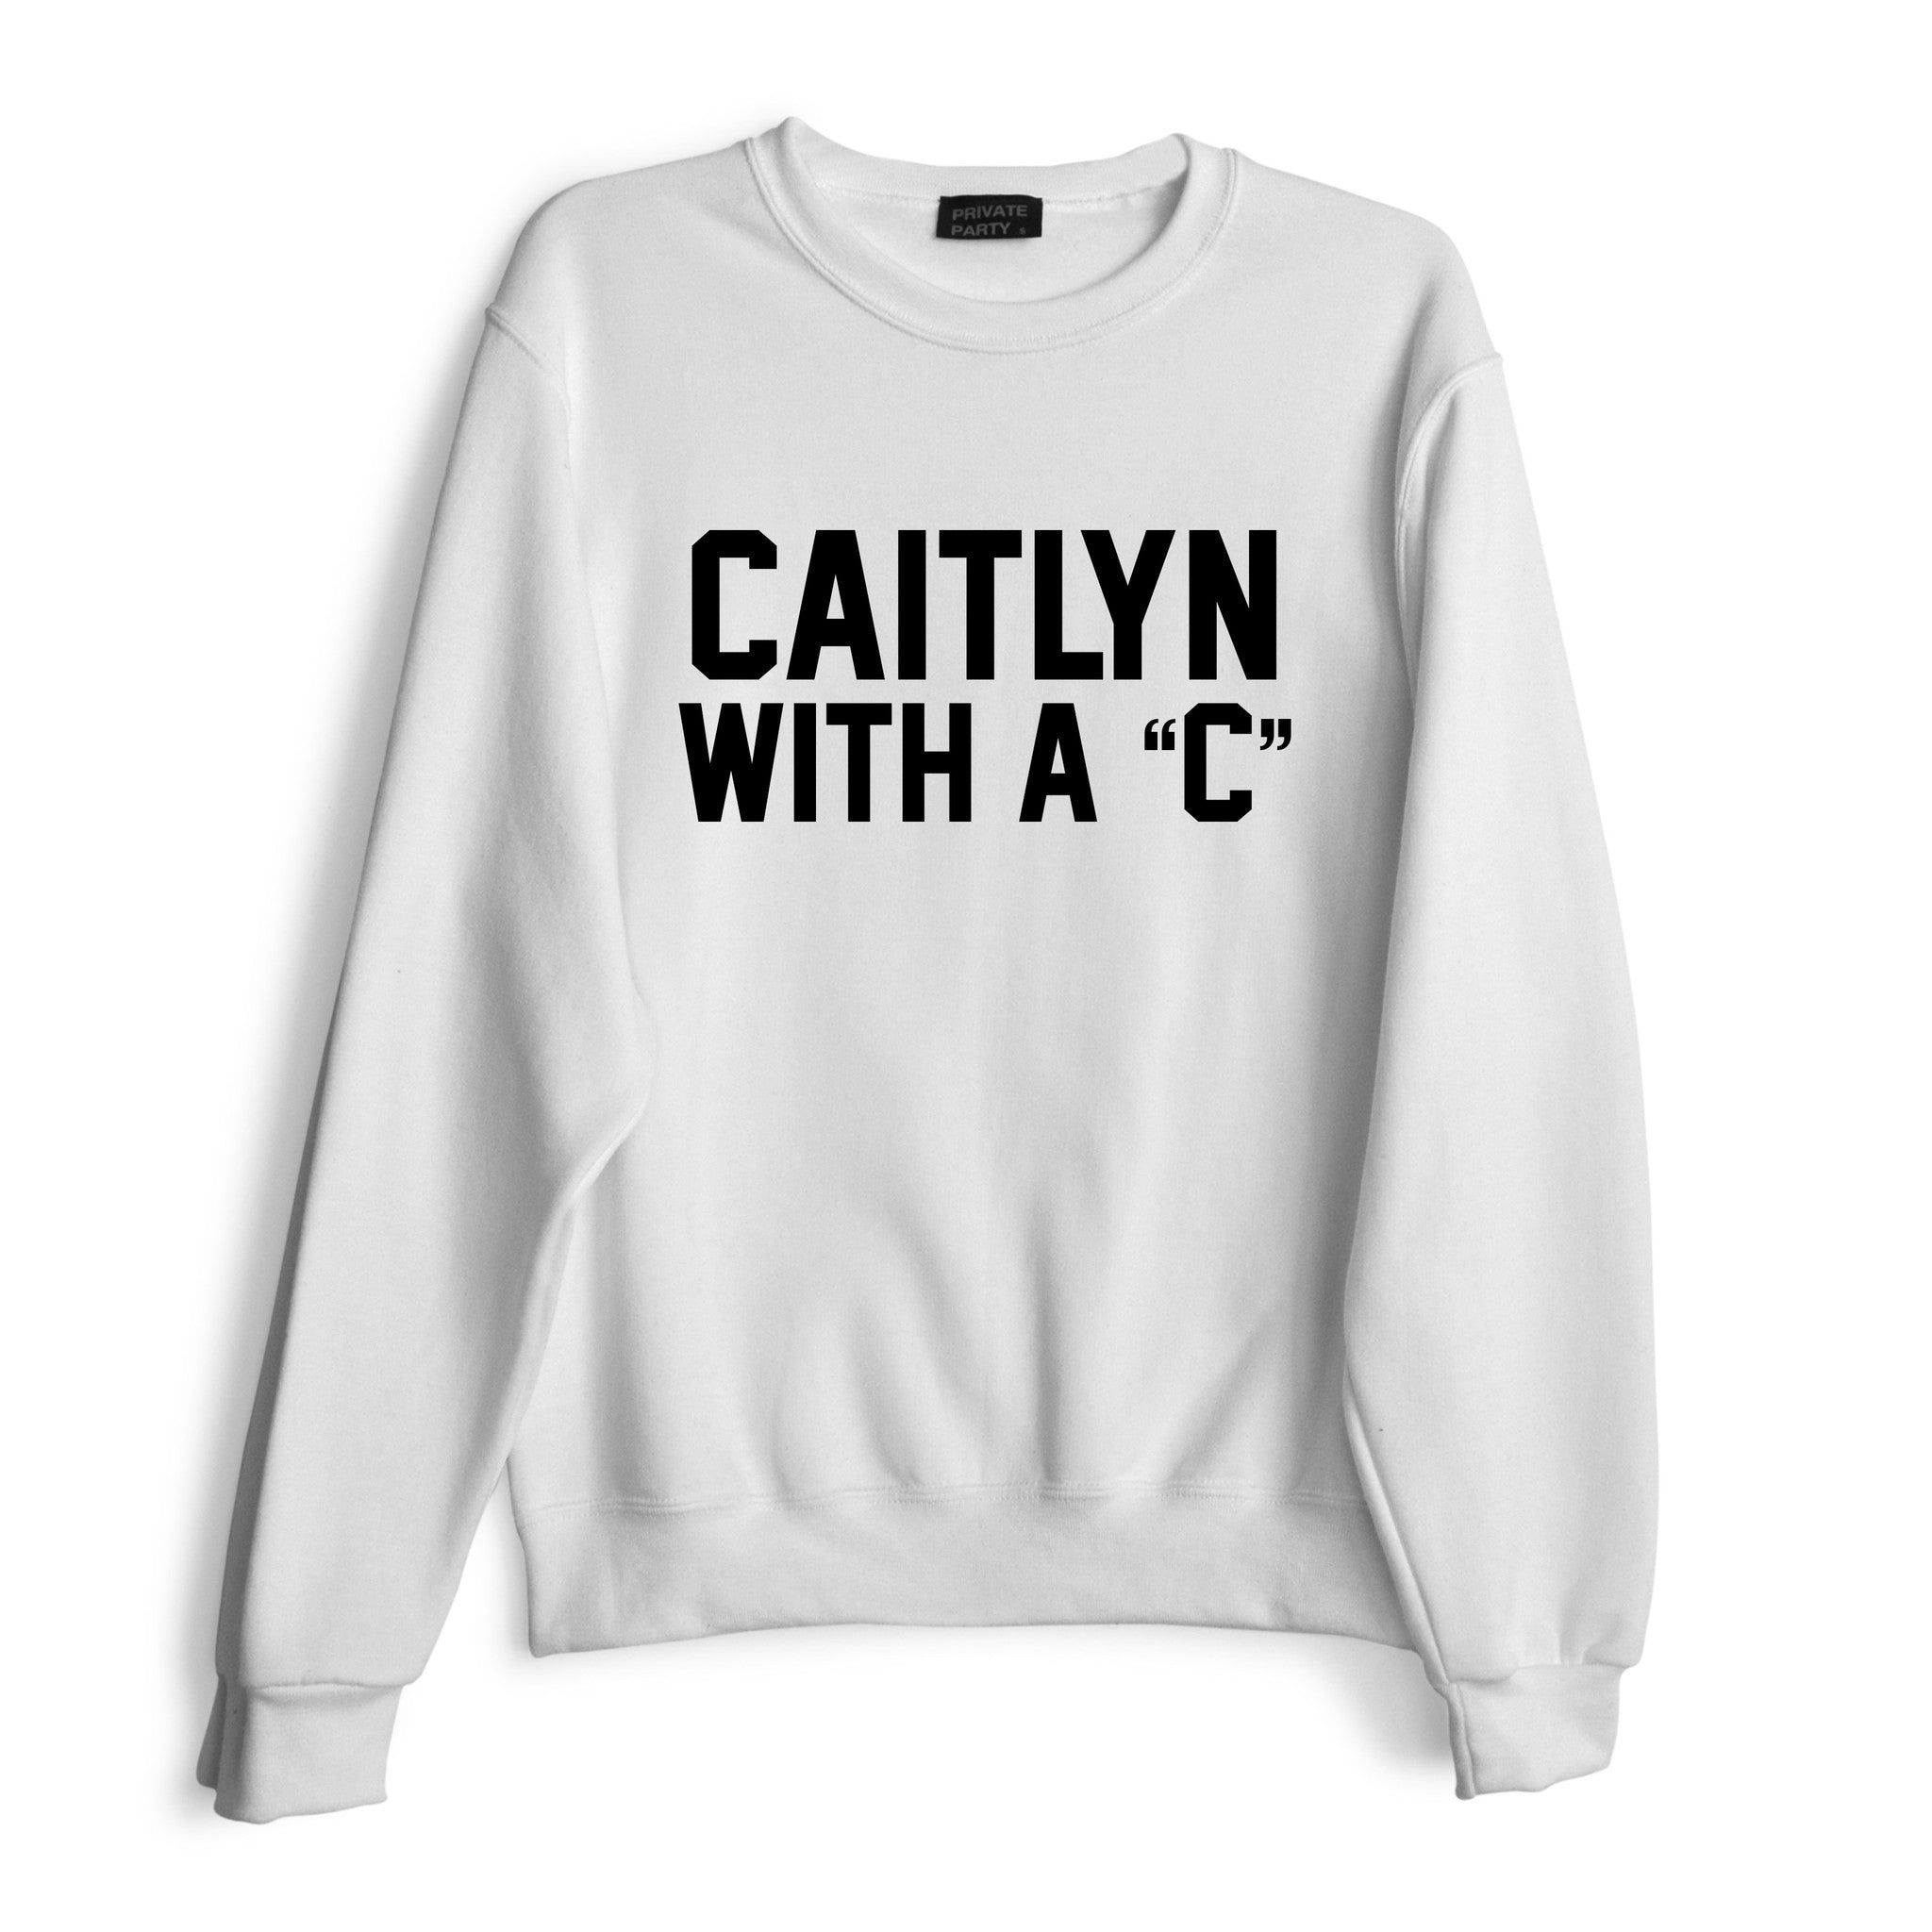 CAITLIN WITH A "C"